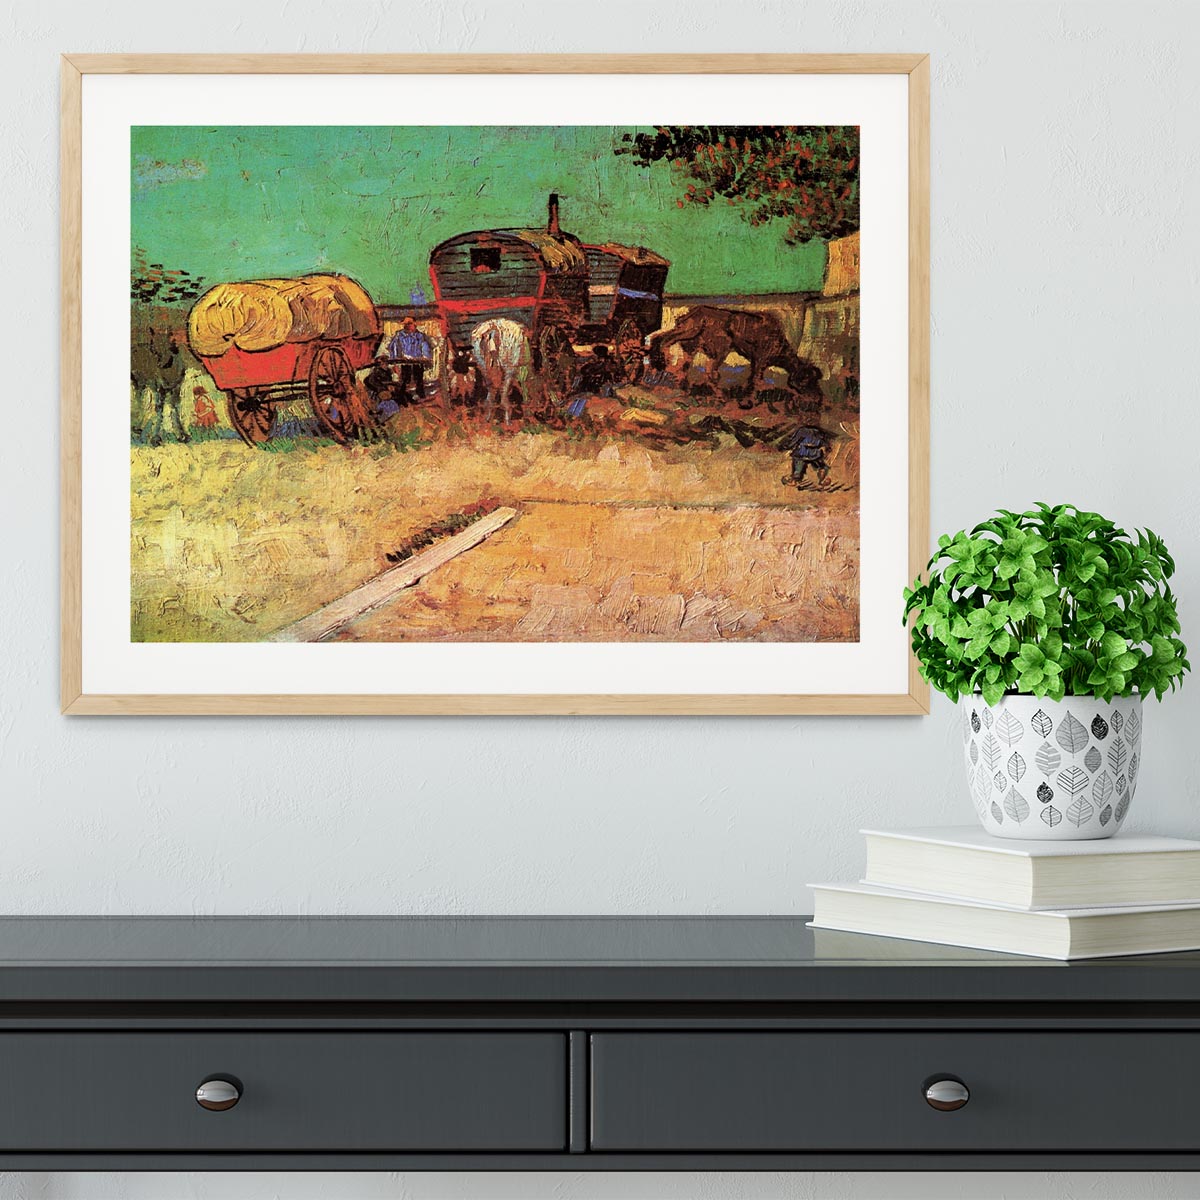 Encampment of Gypsies with Caravans by Van Gogh Framed Print - Canvas Art Rocks - 3